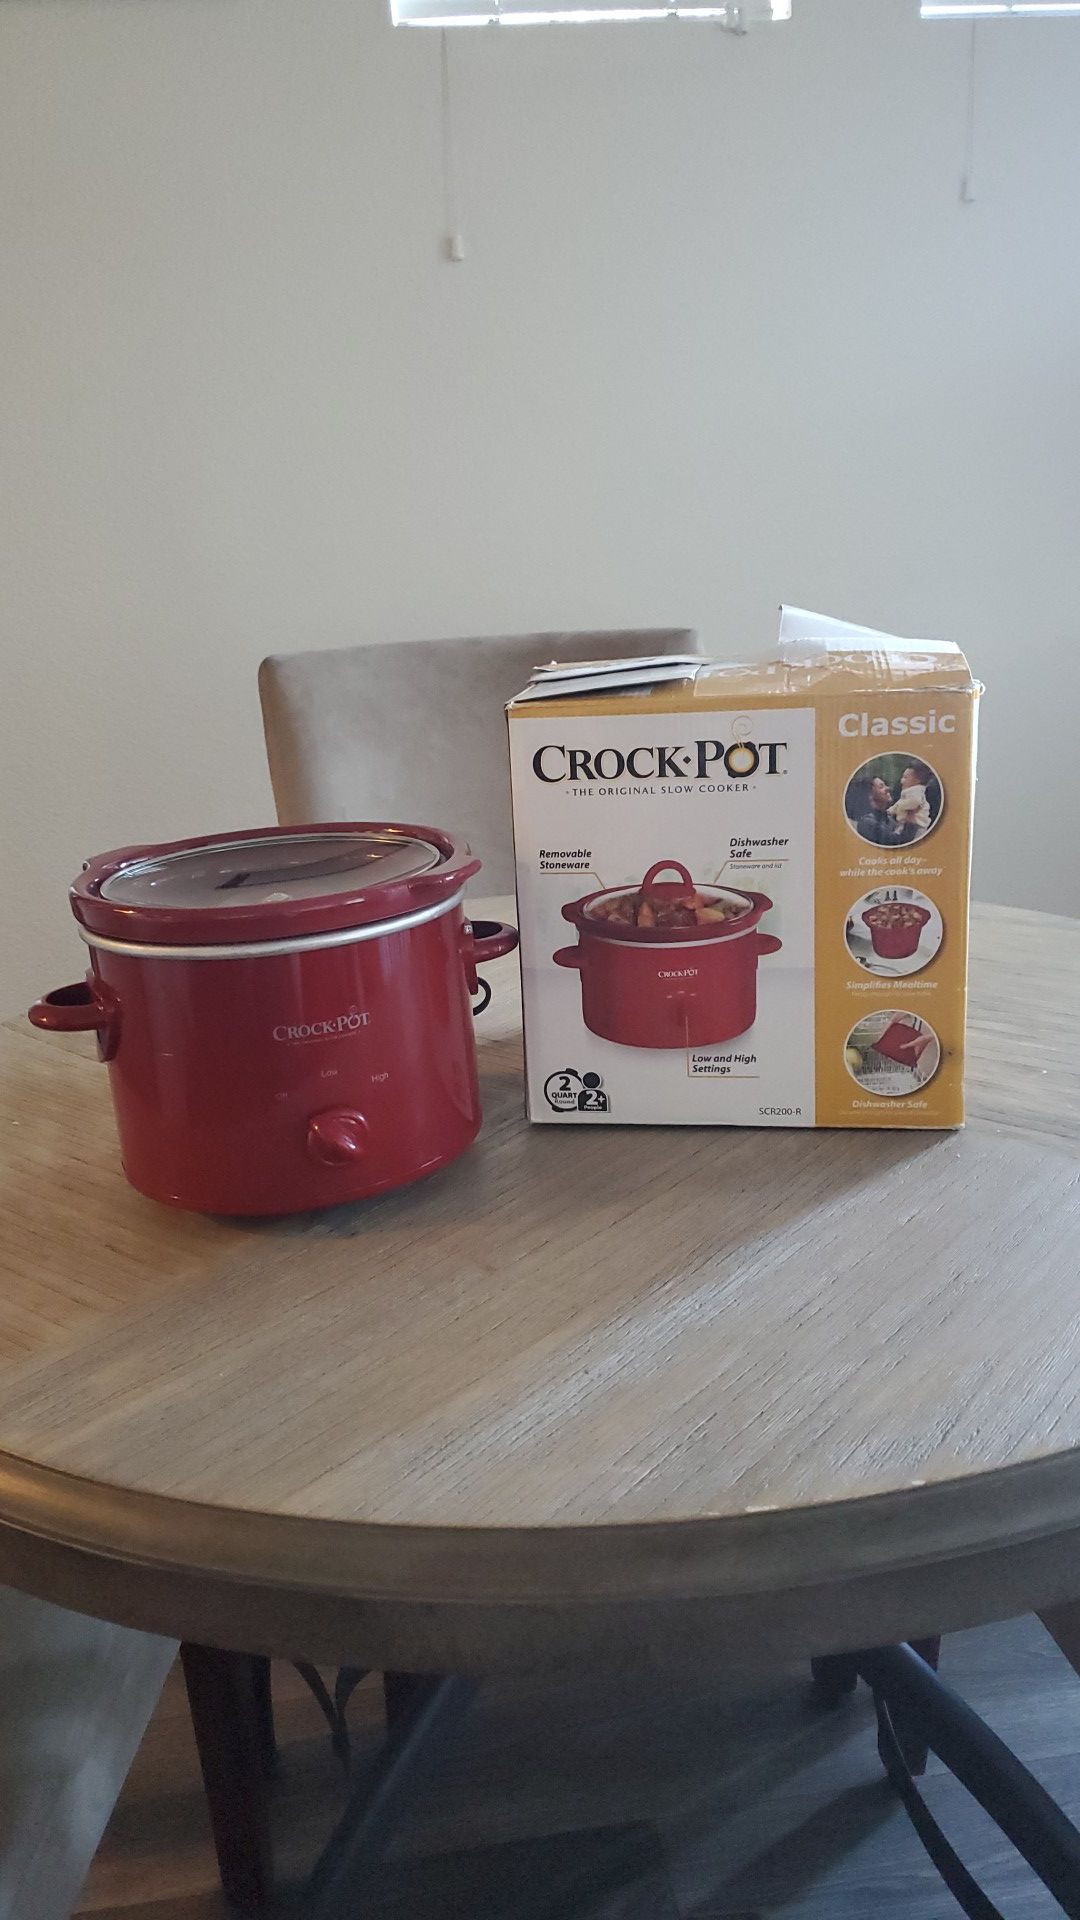 Crock Pot Classic - 2 quart